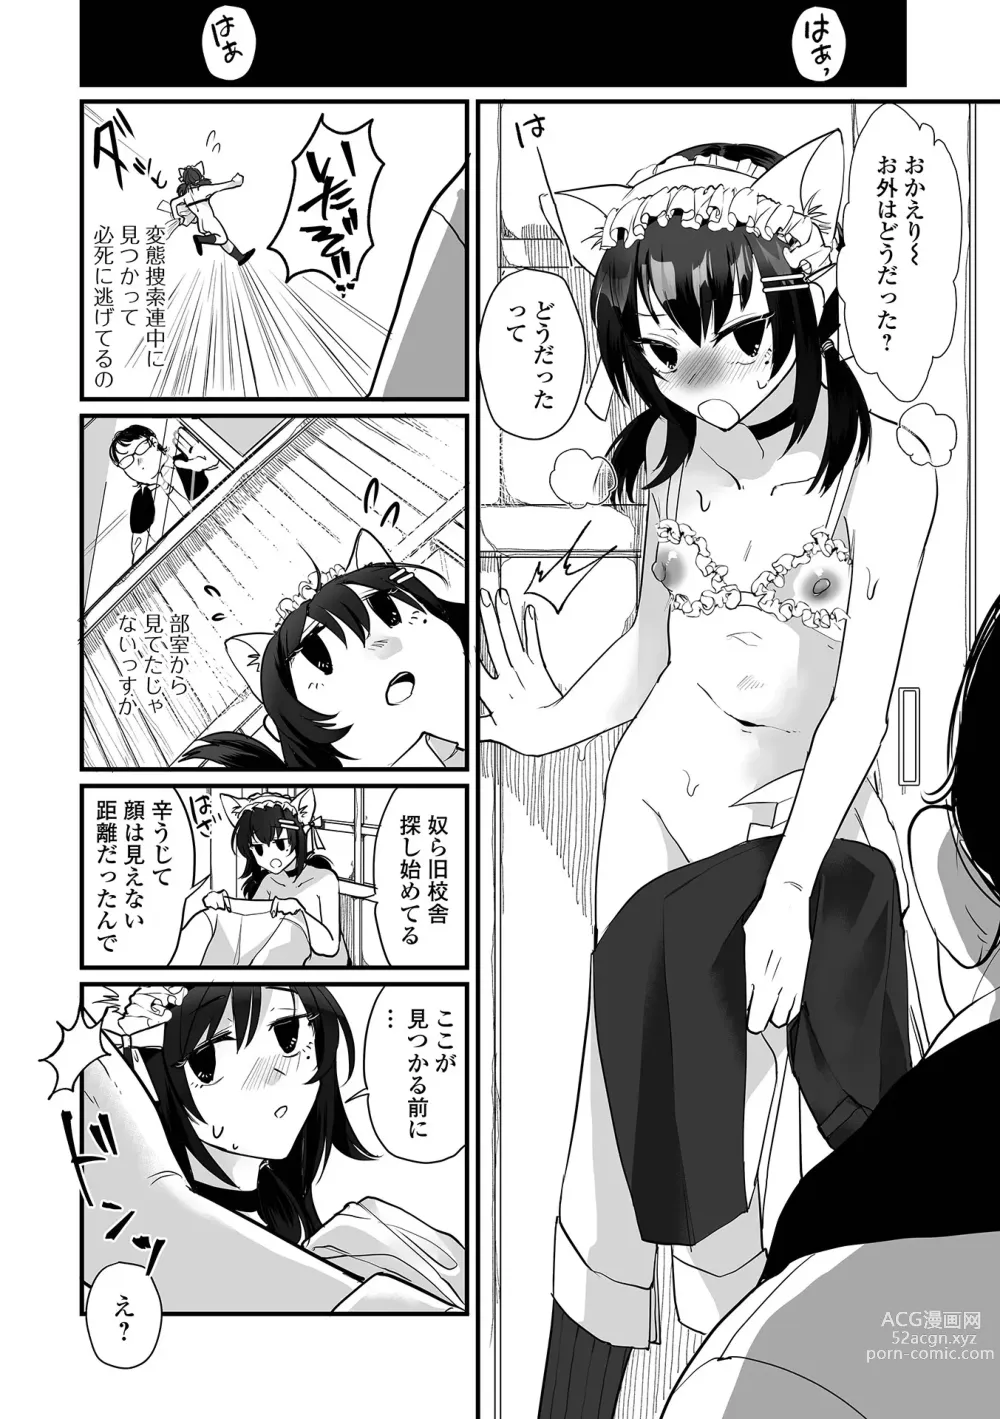 Page 10 of manga Gekkan Web Otoko no Ko-llection! S Vol. 95